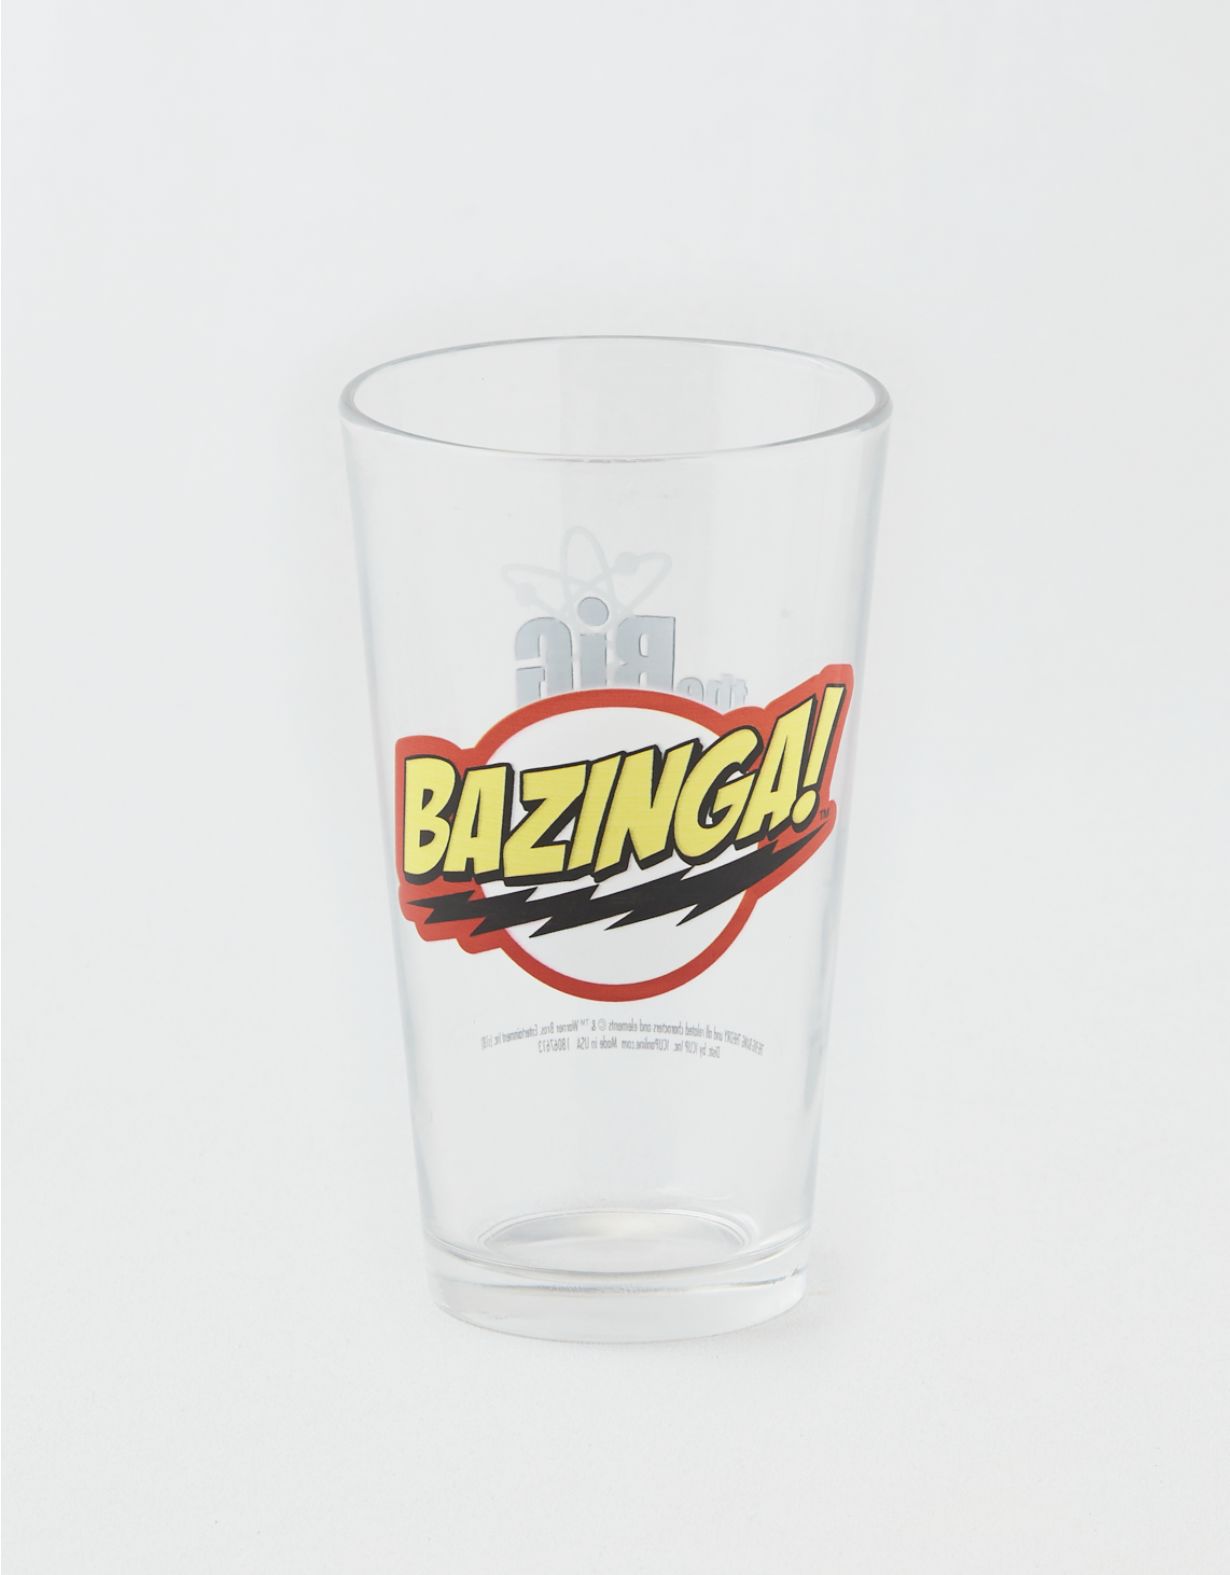 Big Bang Theory "BAZINGA" Pint Glass